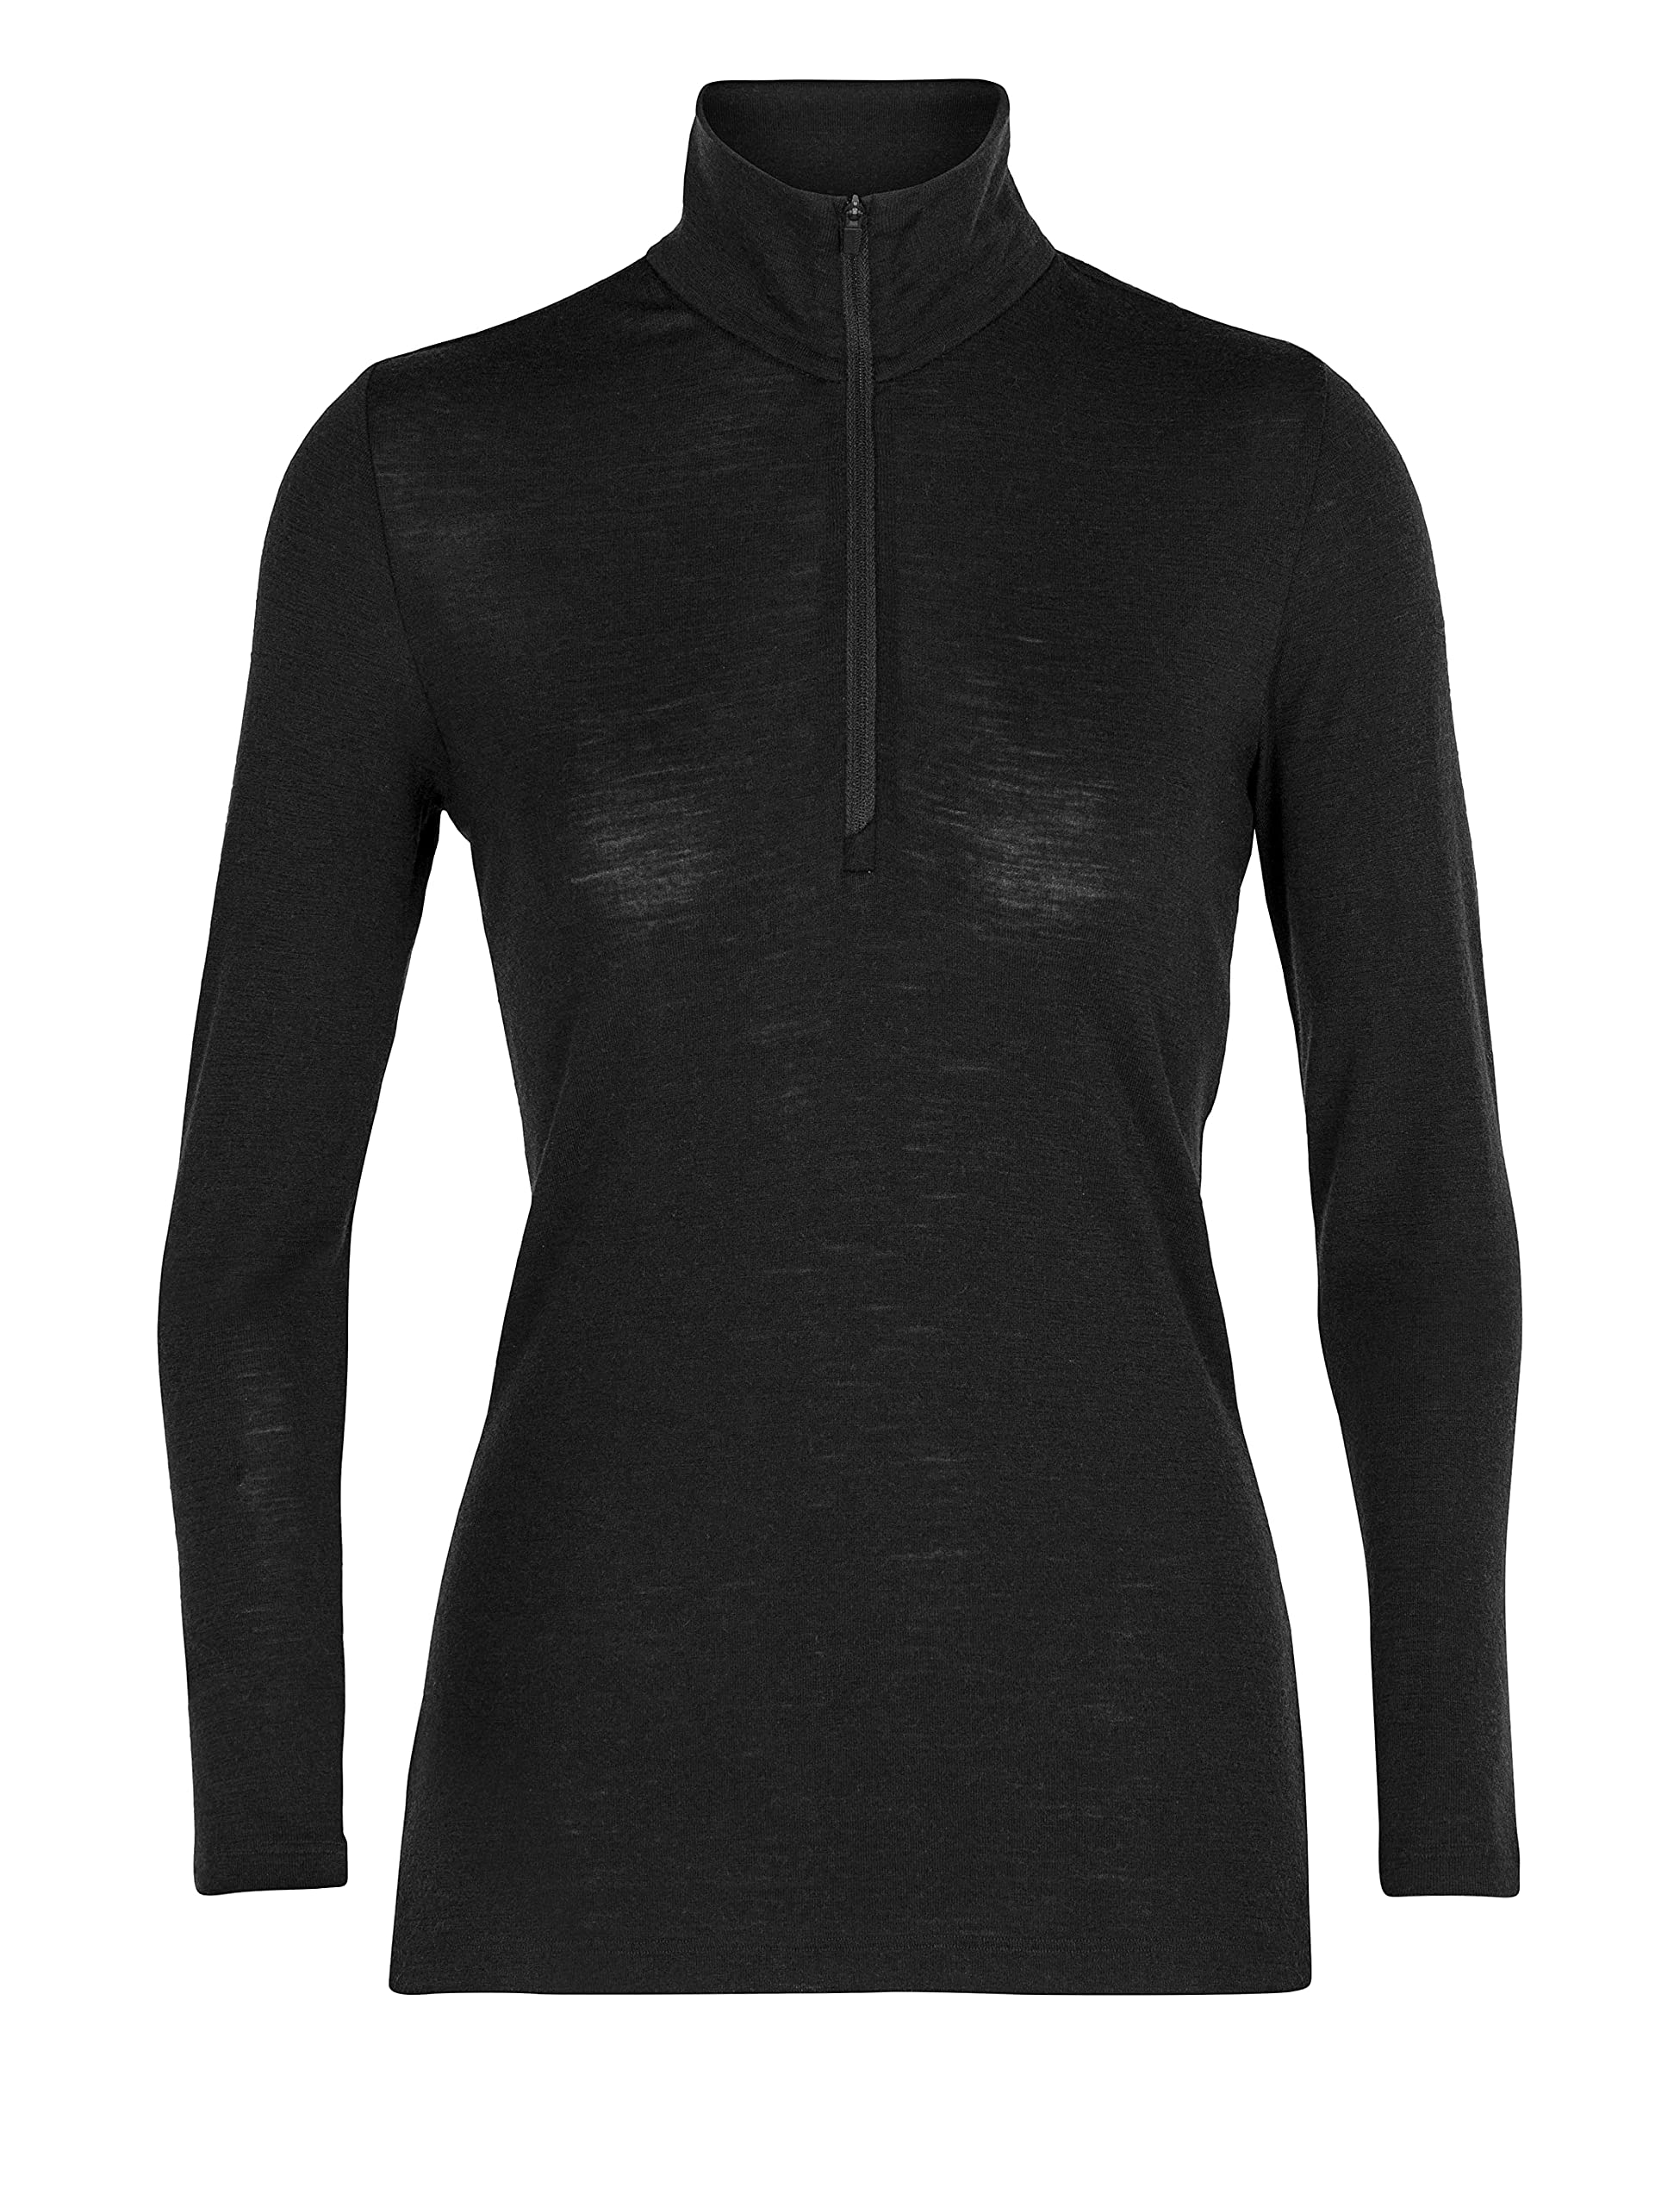 Icebreaker Damen 100% Merino Wolle Everyday Langarmshirt mit halben Reißverschluss - 175 Ultraleichtes Material - Schwarz, L